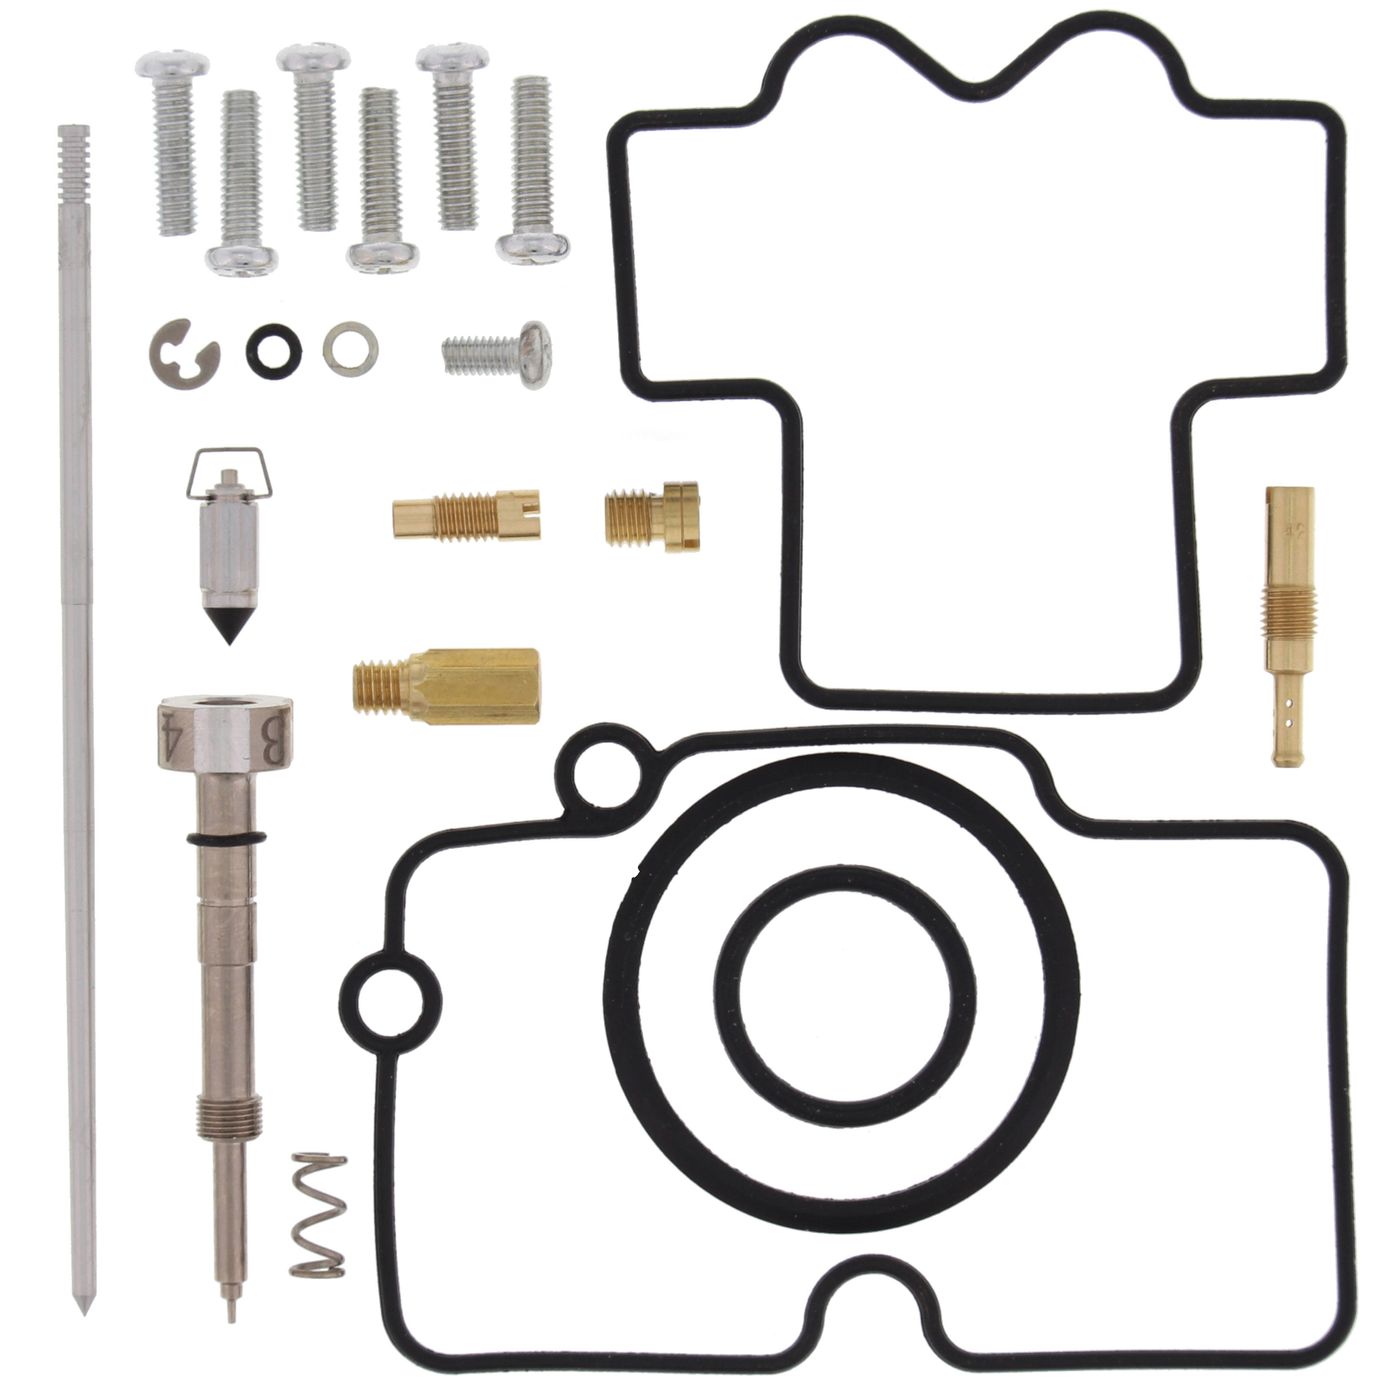 Wrp Carb Repair Kits - WRP261450 image